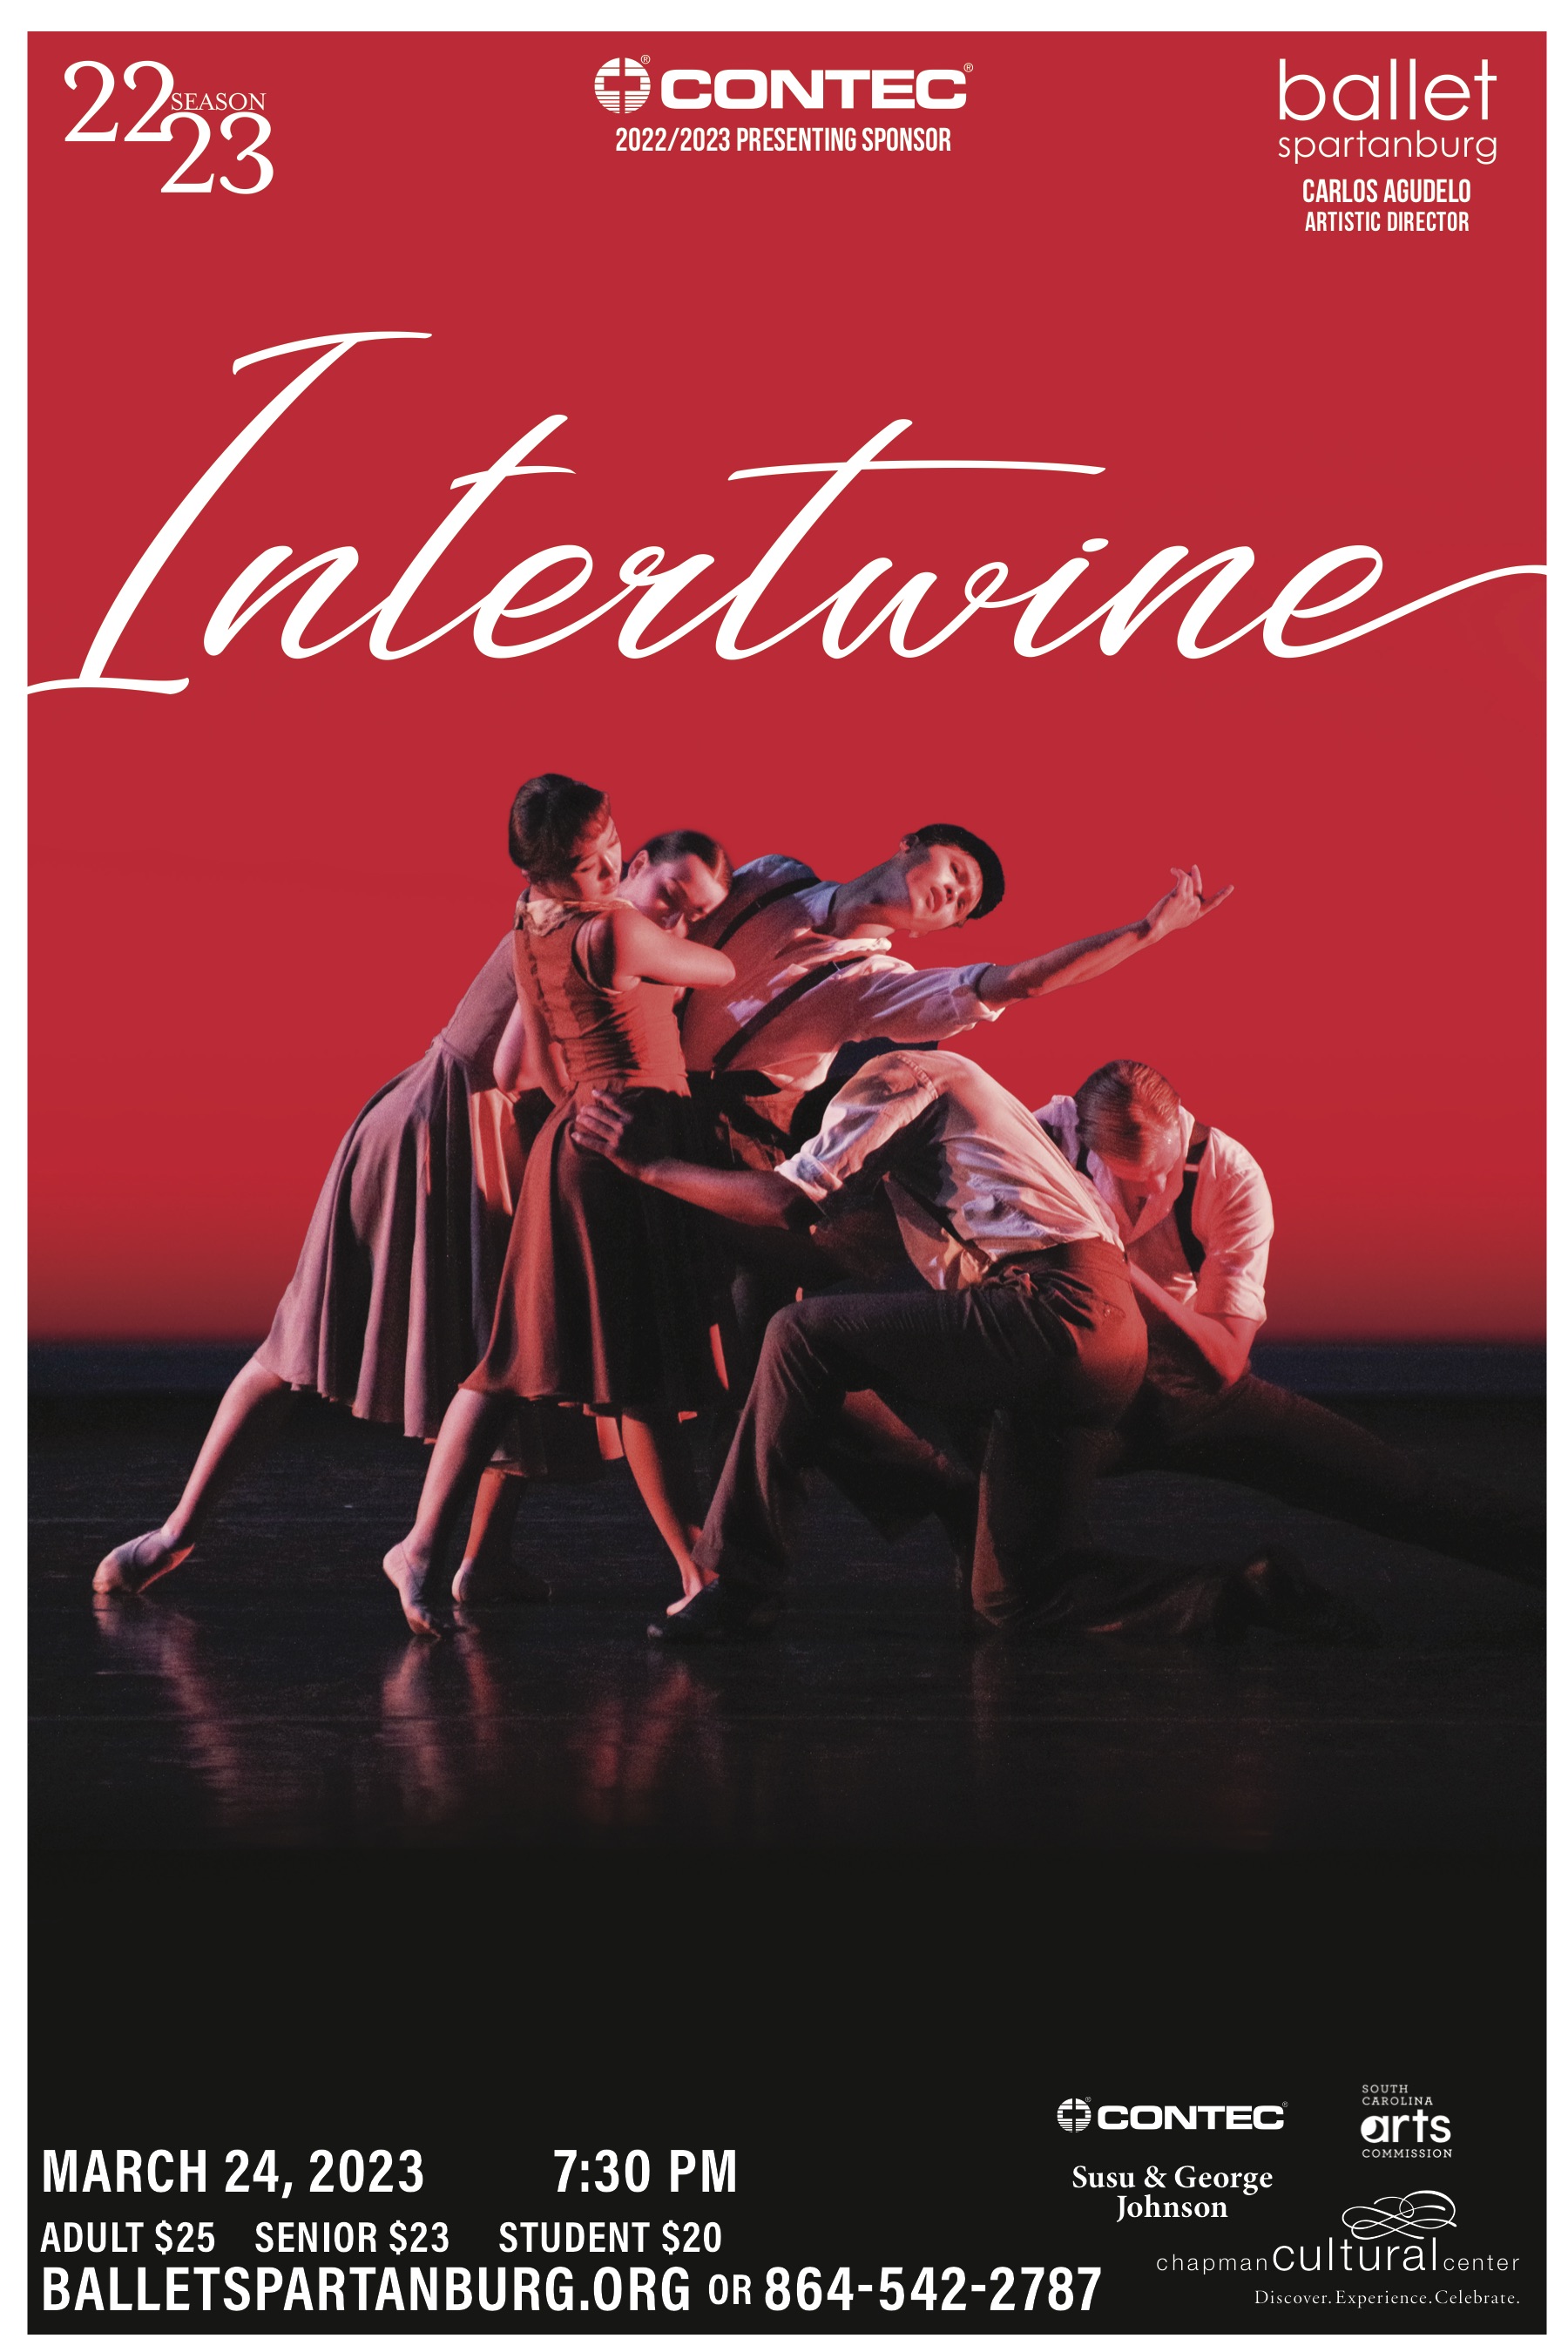 Ballet Spartanburg Intertwine Poster